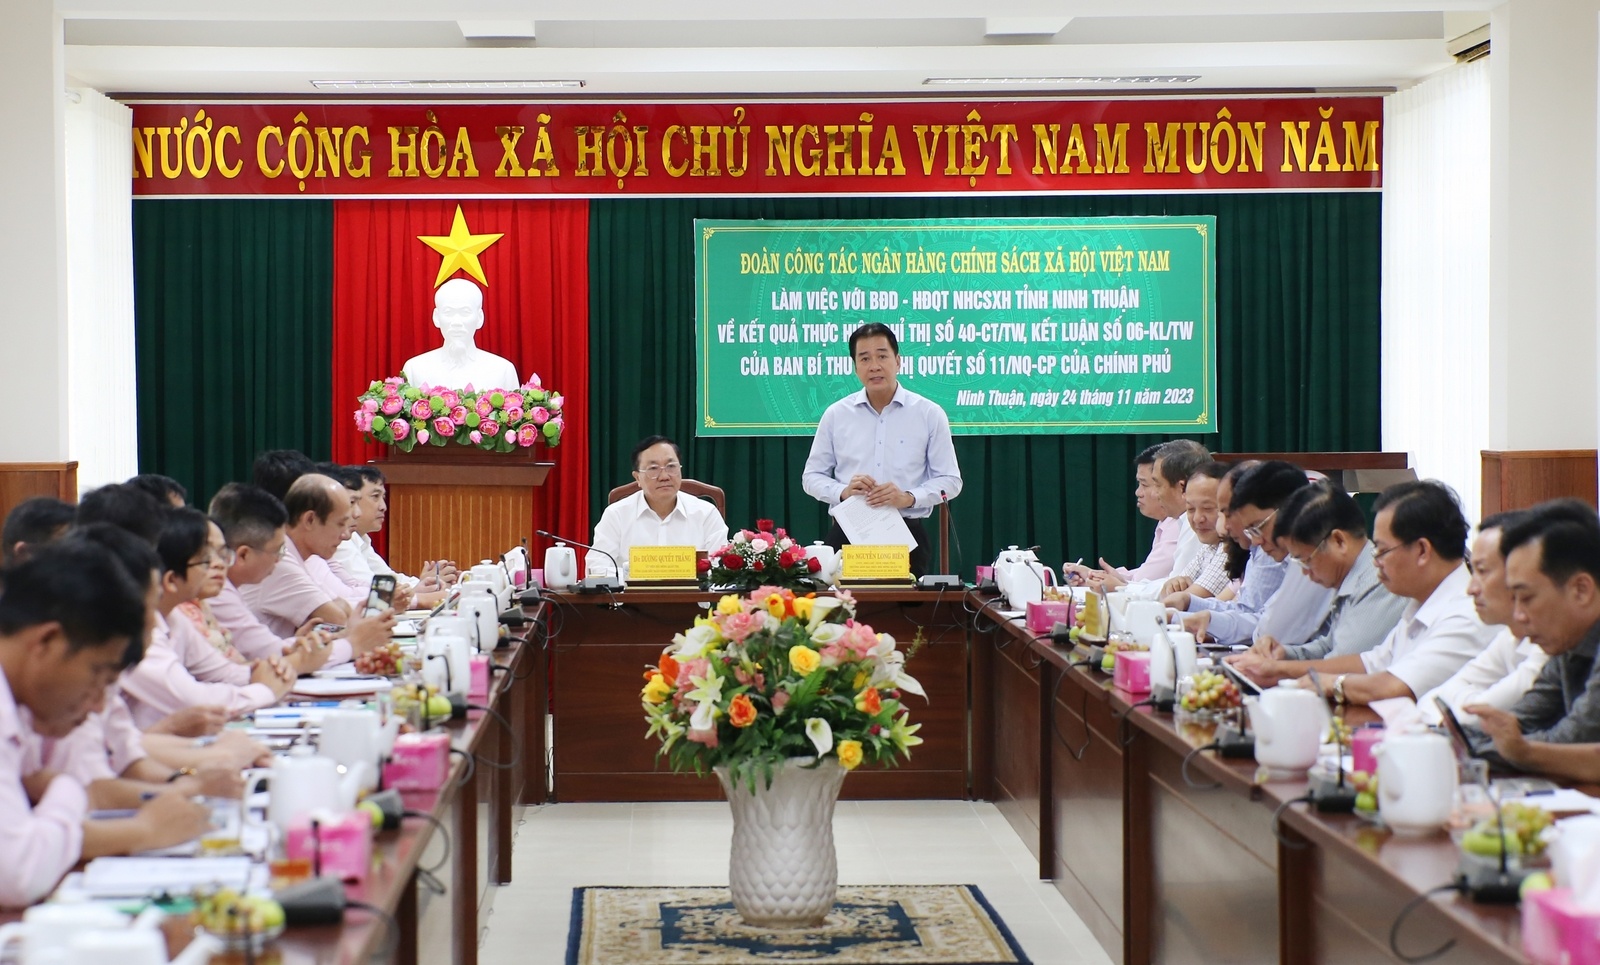 Đoàn công tác NHCSXH làm việc với UBND tỉnh Ninh Thuận về tình hình triển khai thực hiện Nghị quyết số 11 của Chính phủ